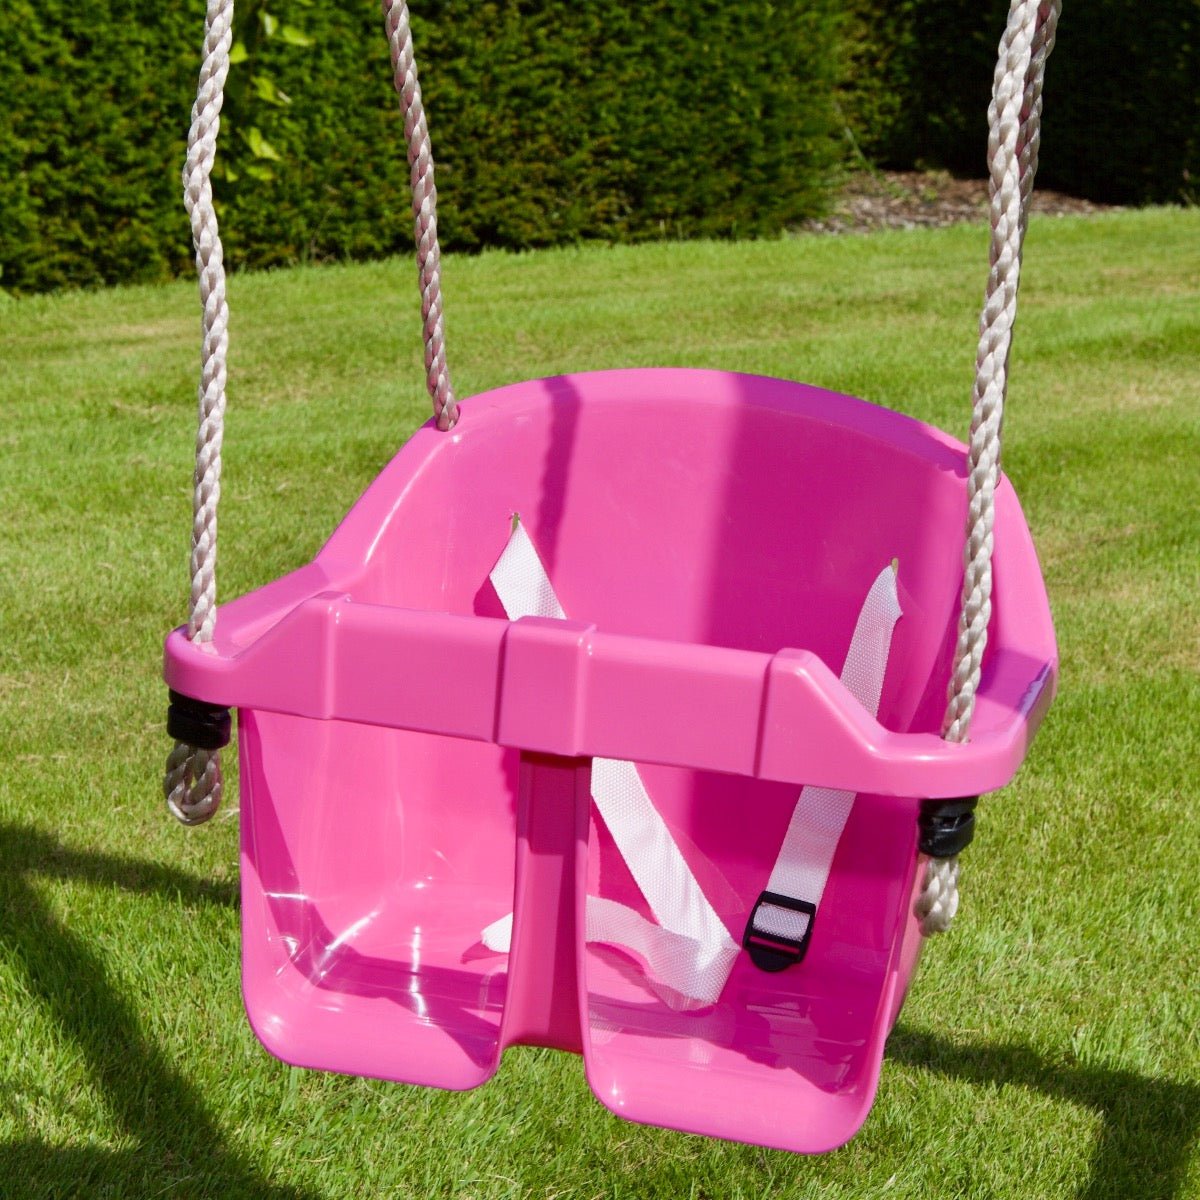 Rebo Toddler Swing Seat - Pink